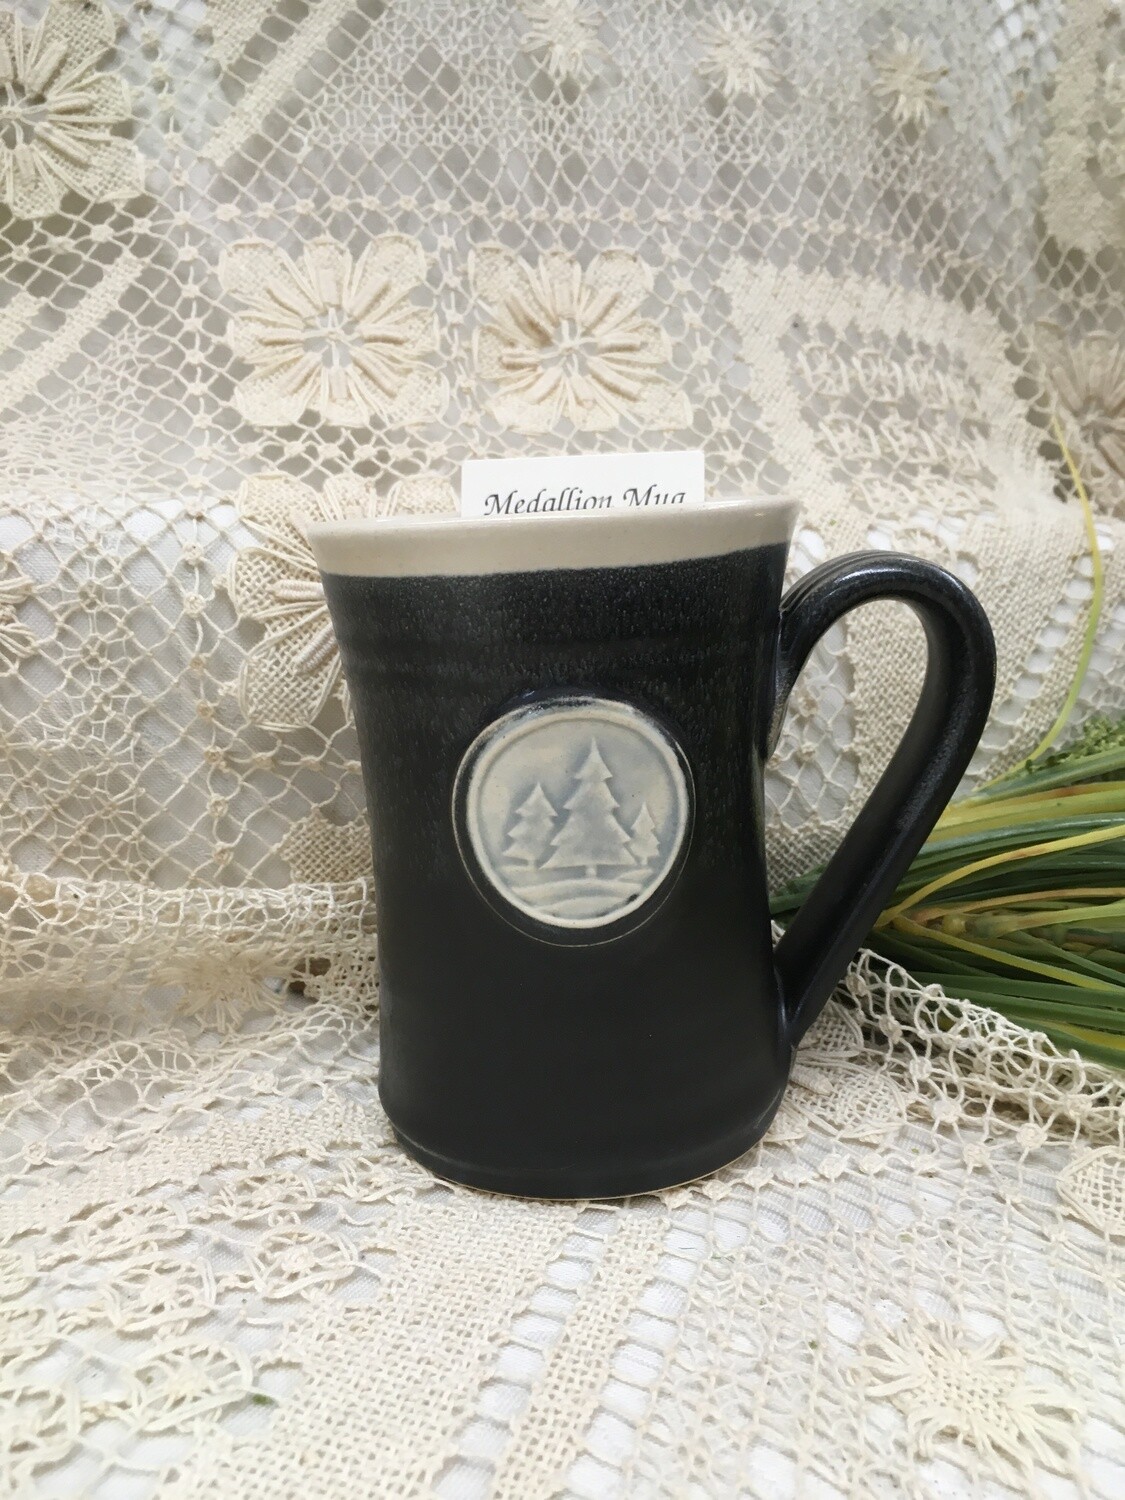 Medallion Large Mug, Pine Trees, Black & White - Pavlo Pottery - Canadian Handmade